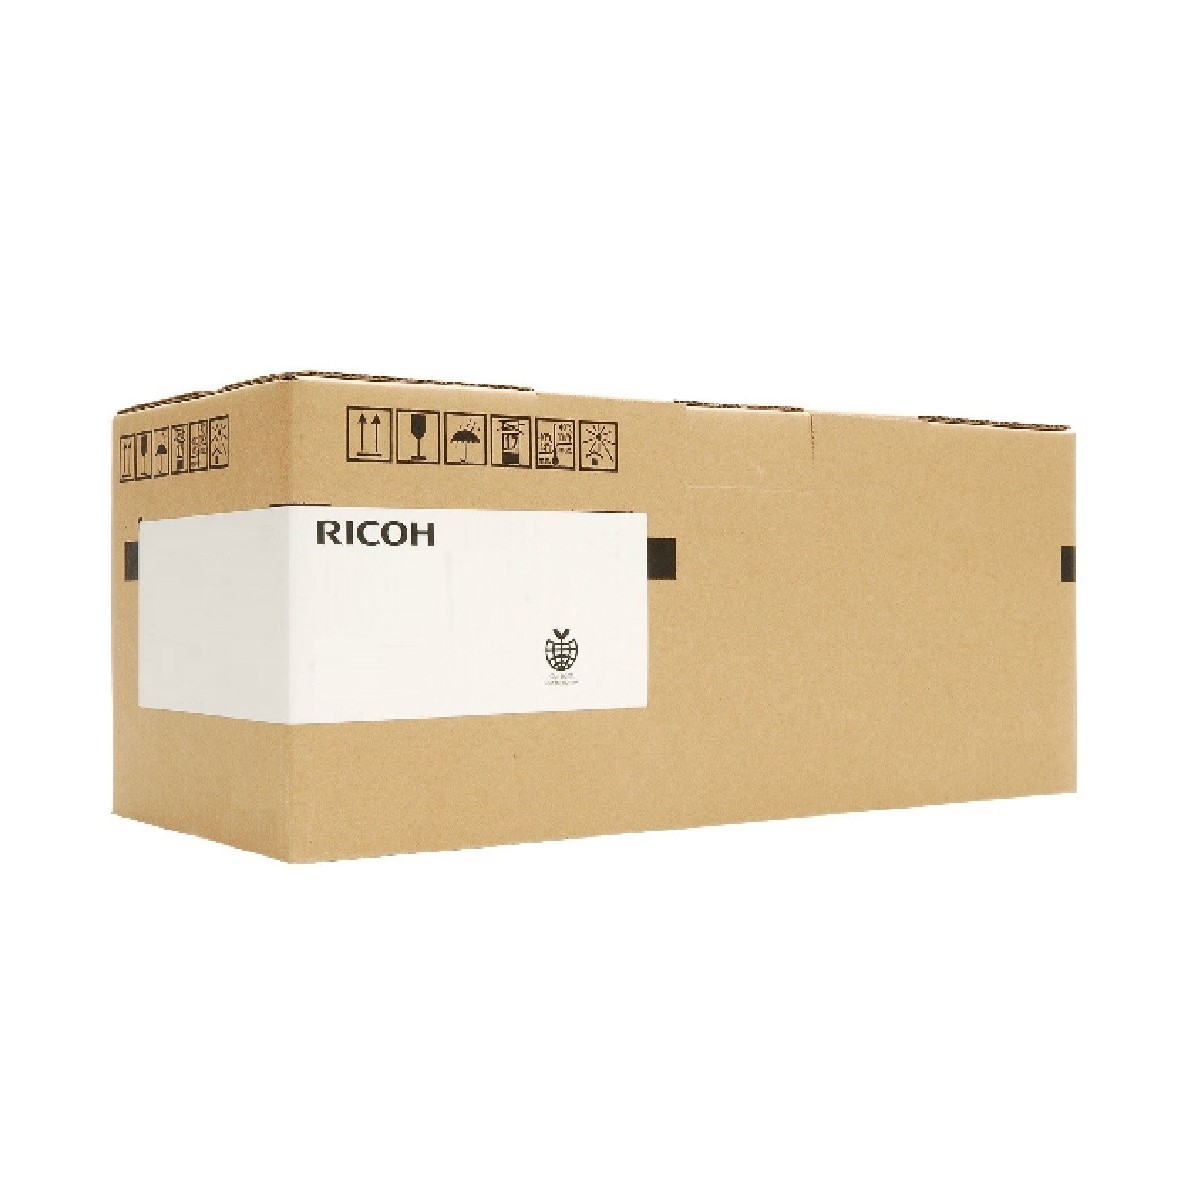 Ricoh 403119 - 160000 pages - Ricoh - Aficio SP C820DNLC Aficio SP C820DNT2 Aficio SP C820DN Aficio SP C821DN Aficio SP C821DNLC